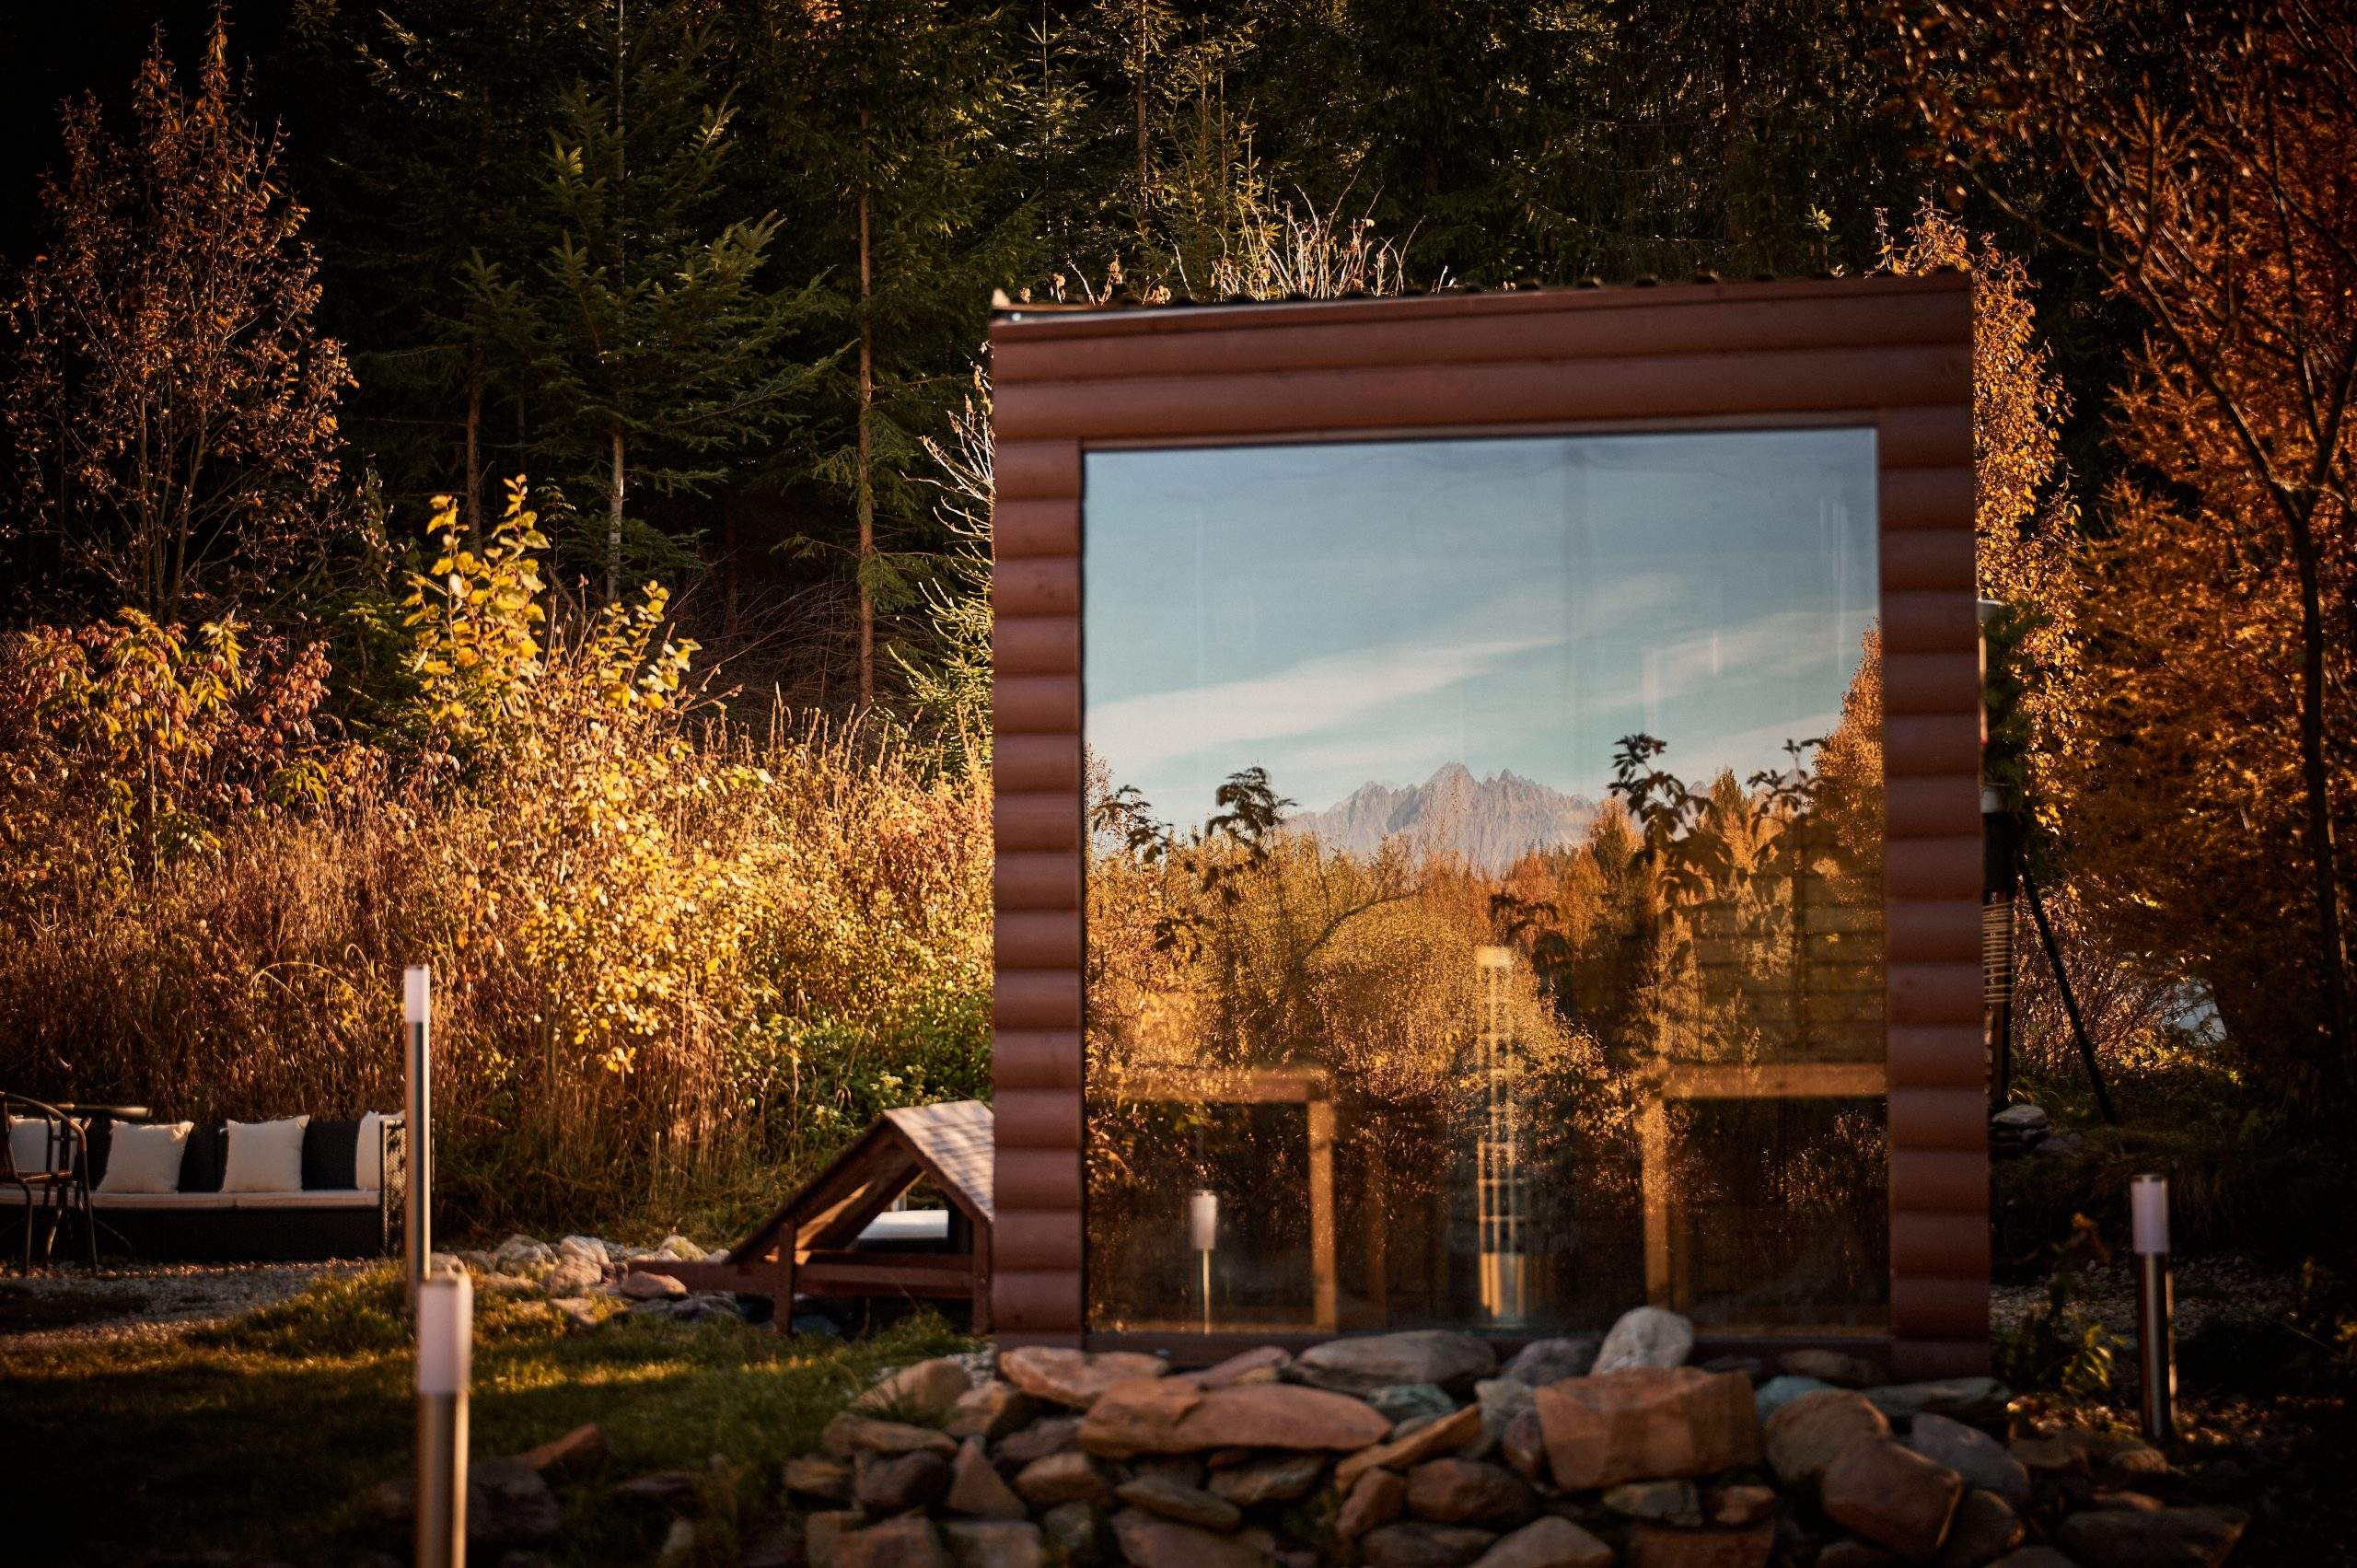 Objavte sauny ukryté v prírode a doprajte si výnimočný zážitok